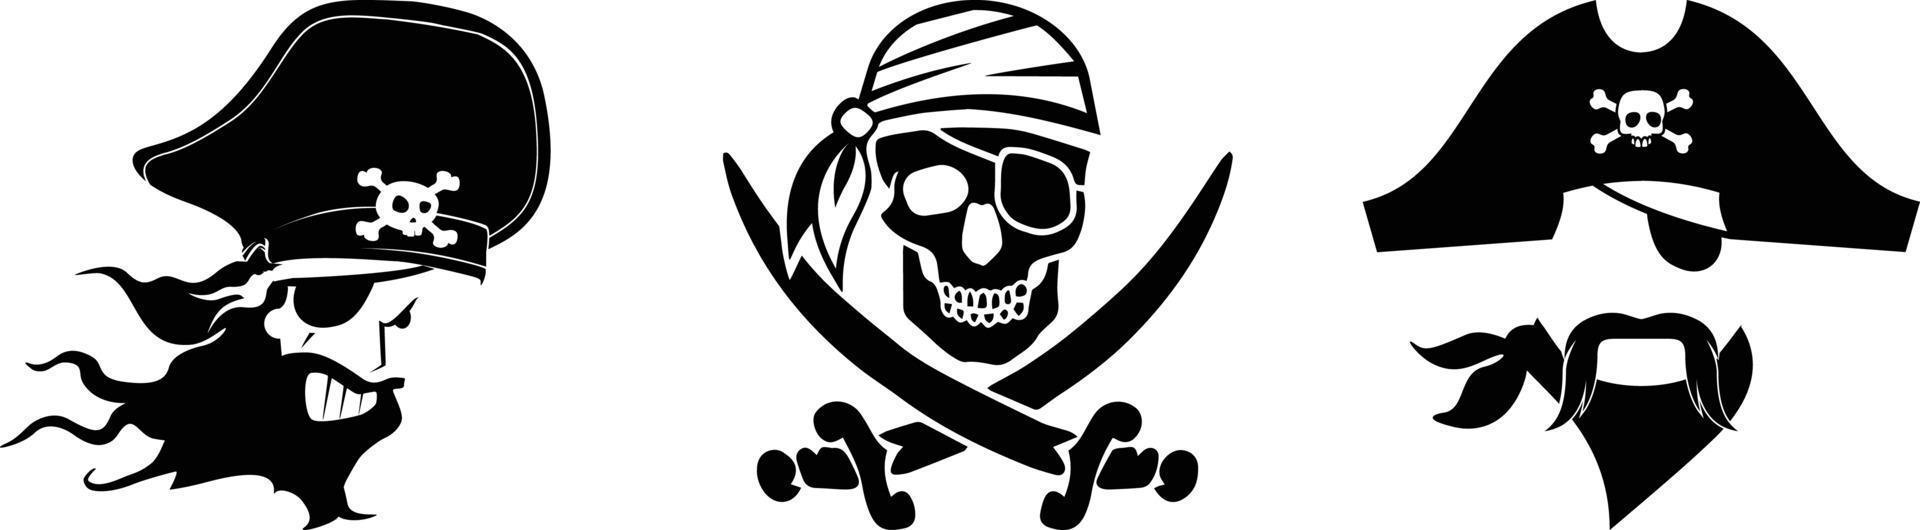 Pirates Heads Logos vector